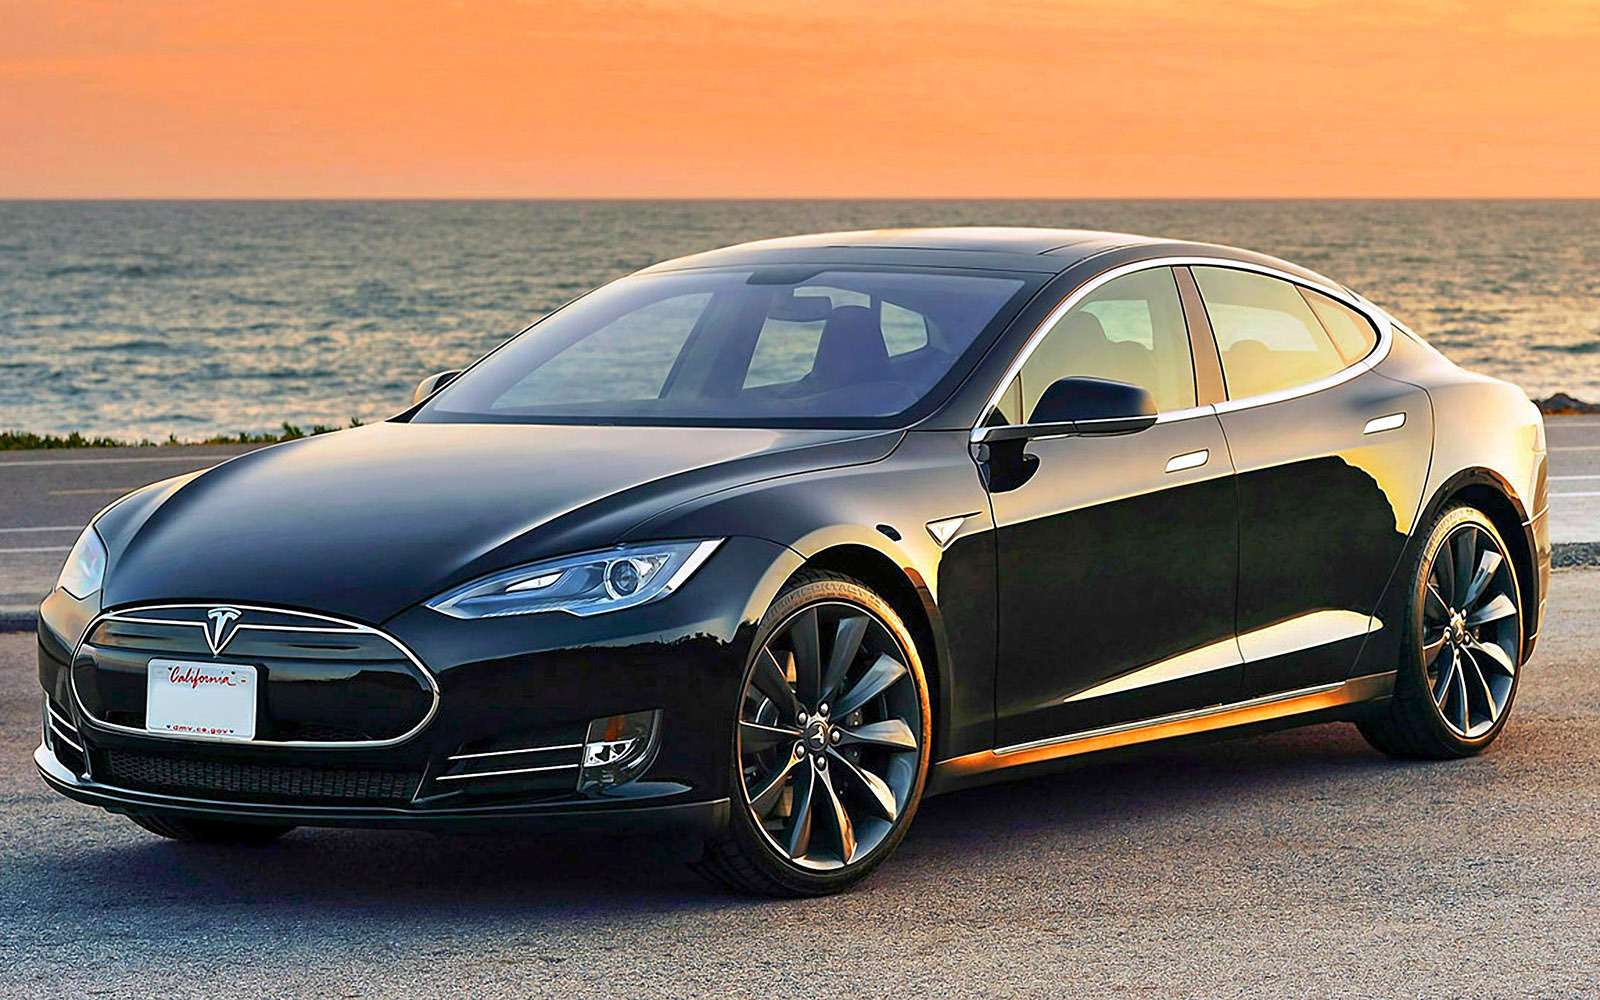 Вершина электромобилестроения – Tesla Model S с двигателем мощностью 235 кВт и заявленным запасом хода 442 км. Позволю себе скептический вопрос: в каком режиме и при каких условиях?